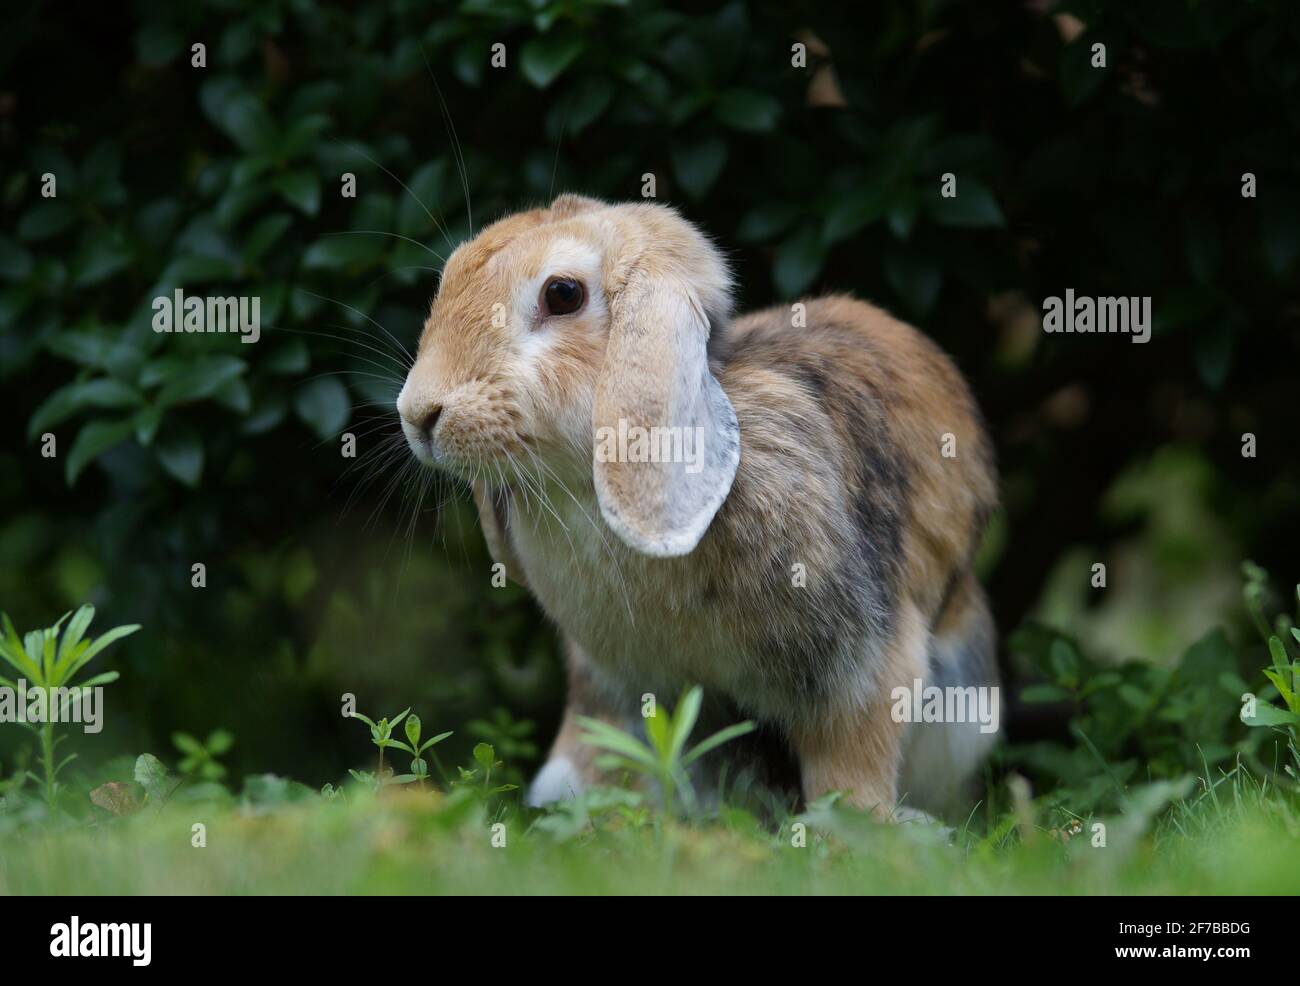 lop eared dwarf ram rabbit sitting in bush Stock Photo